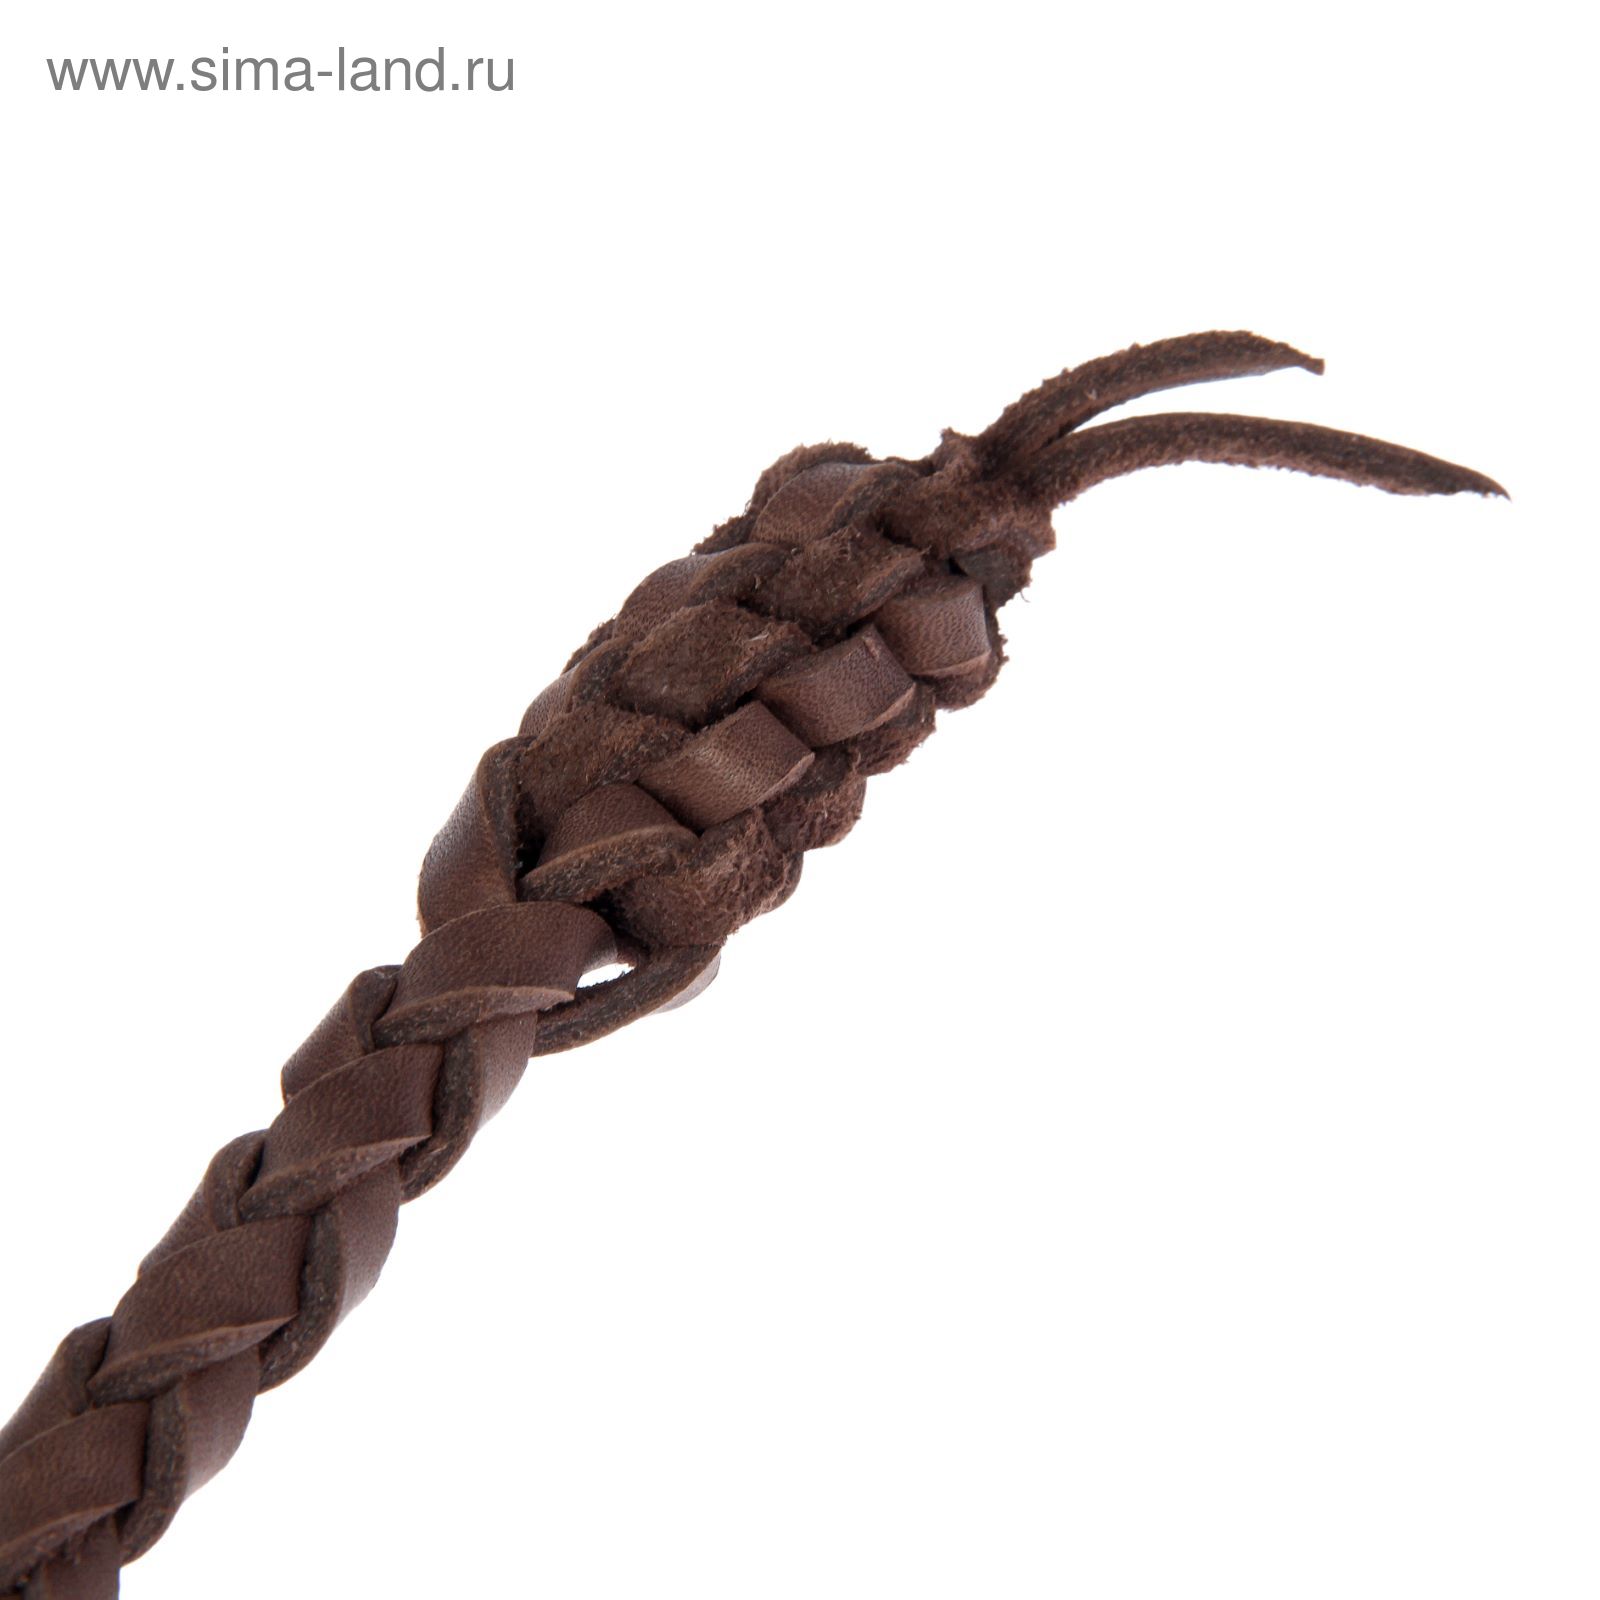 Нагайка Донская, ручка оплетена кожей, коричневая